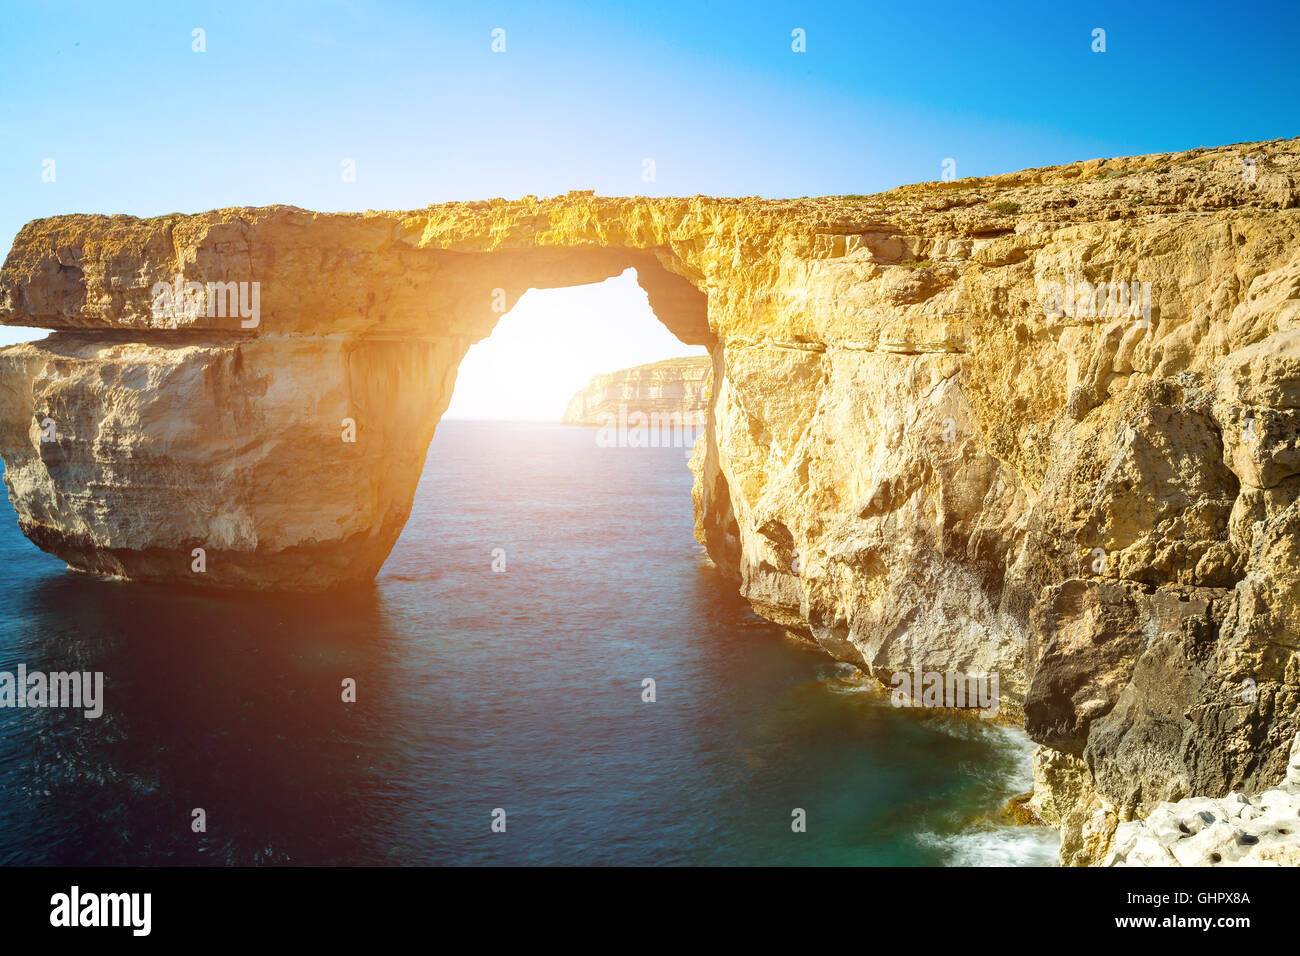 Ventana azul, arco natural, famosos y populares lugares turísticos en la isla de Gozo, Malta Foto de stock